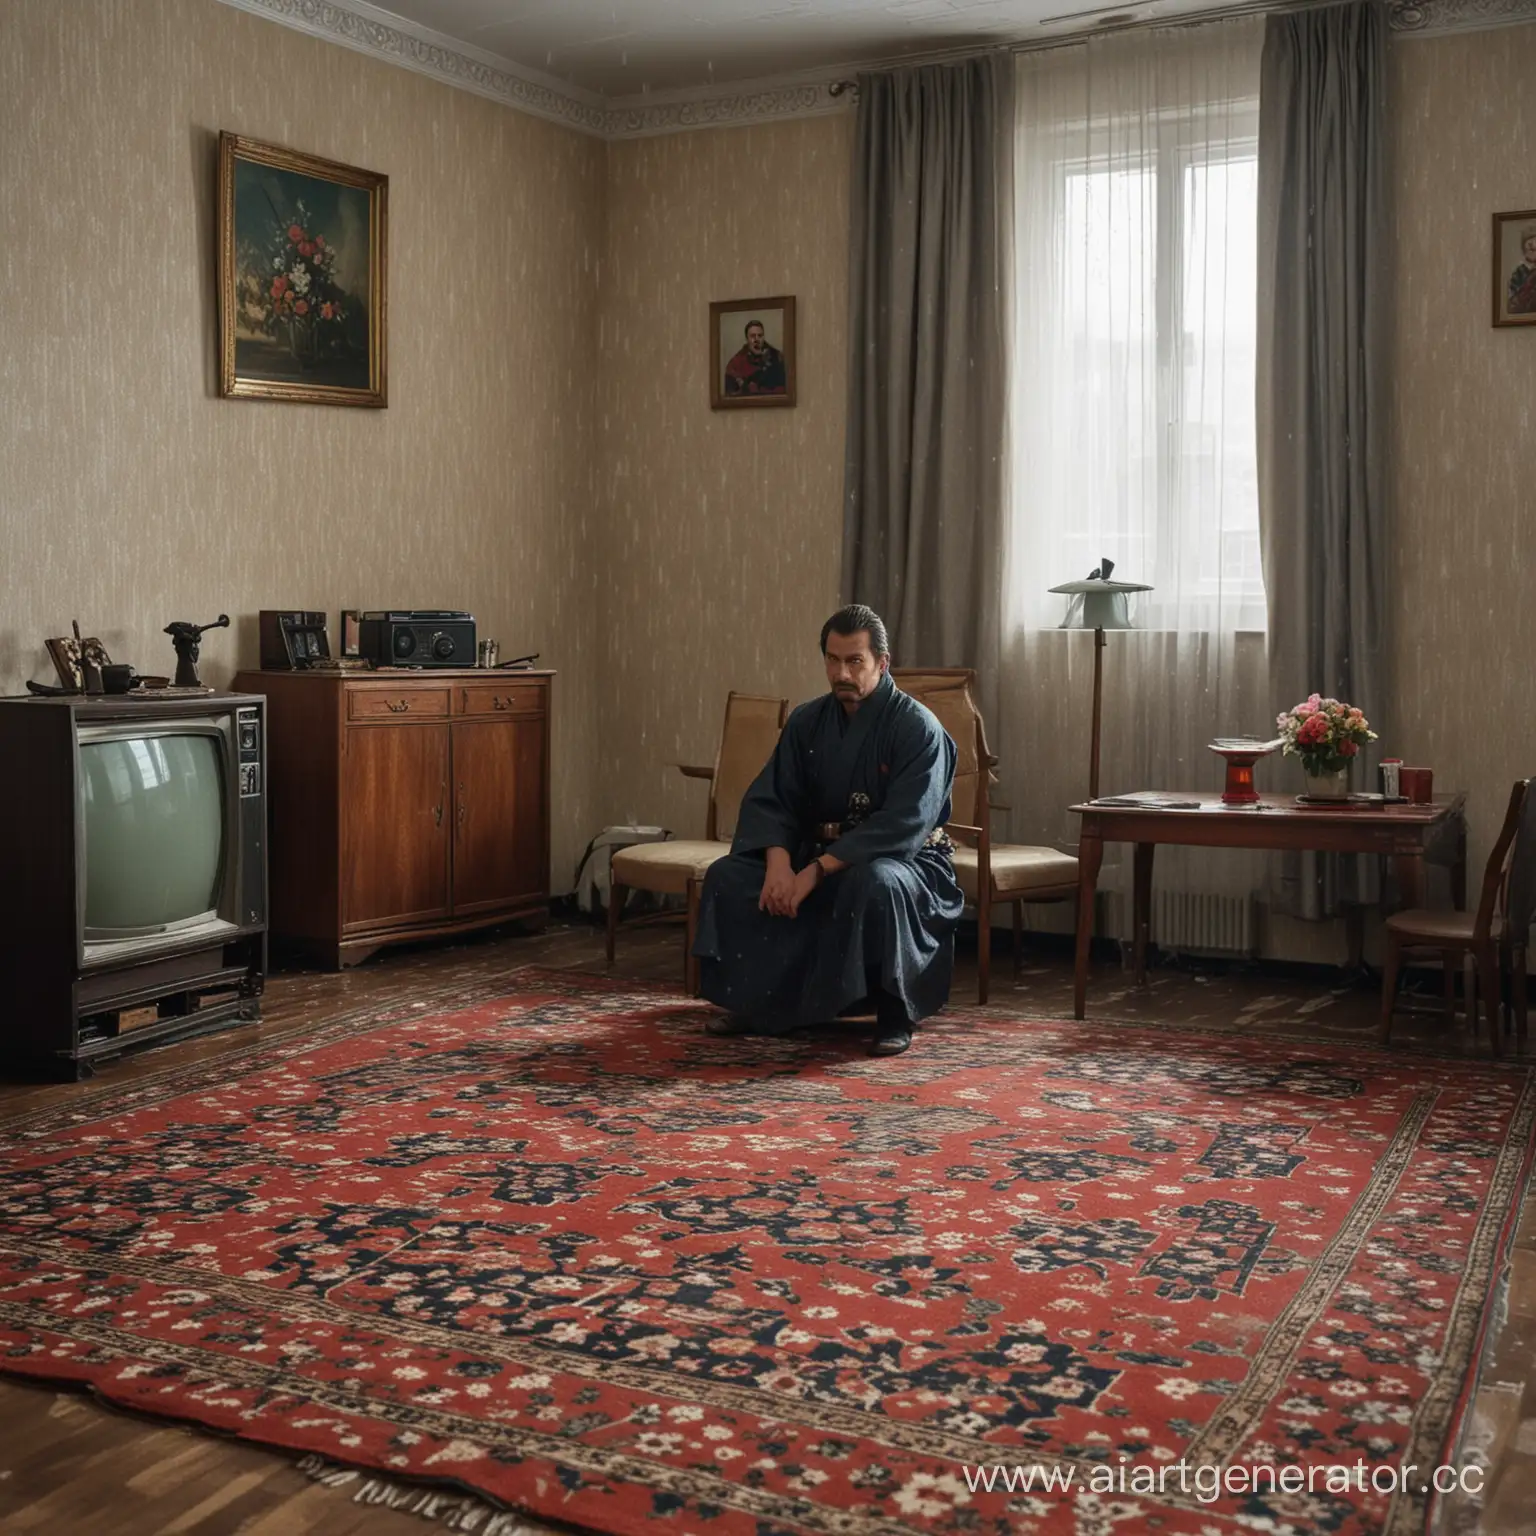 Самурай сидит в советской квартире "Хрущёвке" на ковре, позади работает телевизор. Прямо в комнате идёт дождь.